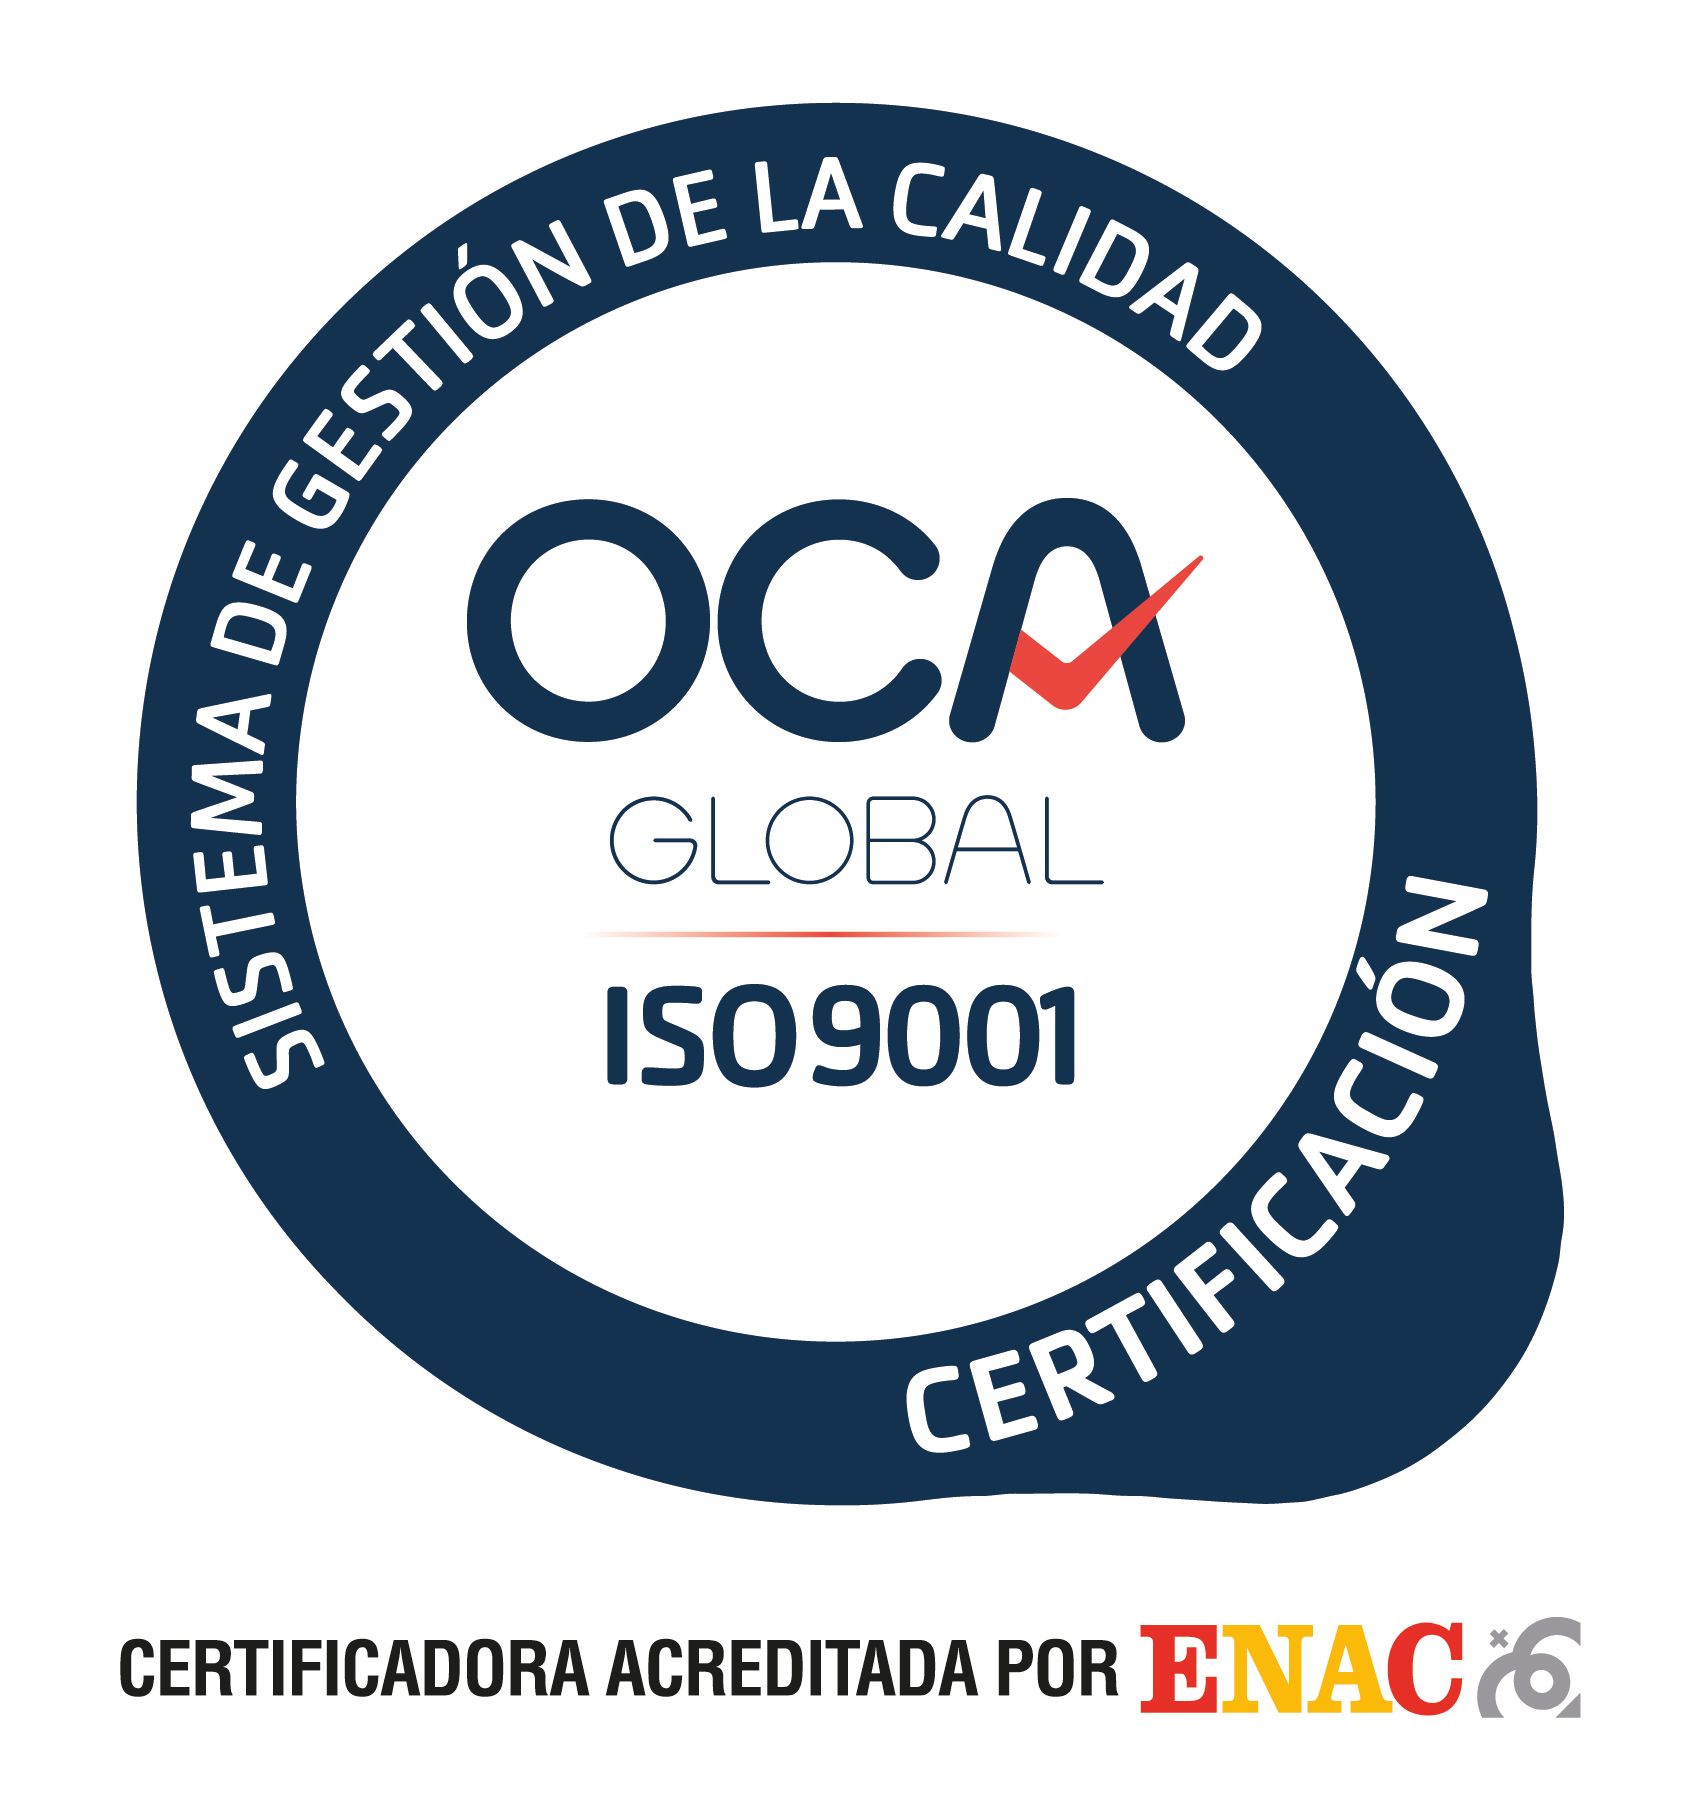 Certificación del sistema de gestión de la calidad conforme con la norma UNE-EN ISO 9001:2015